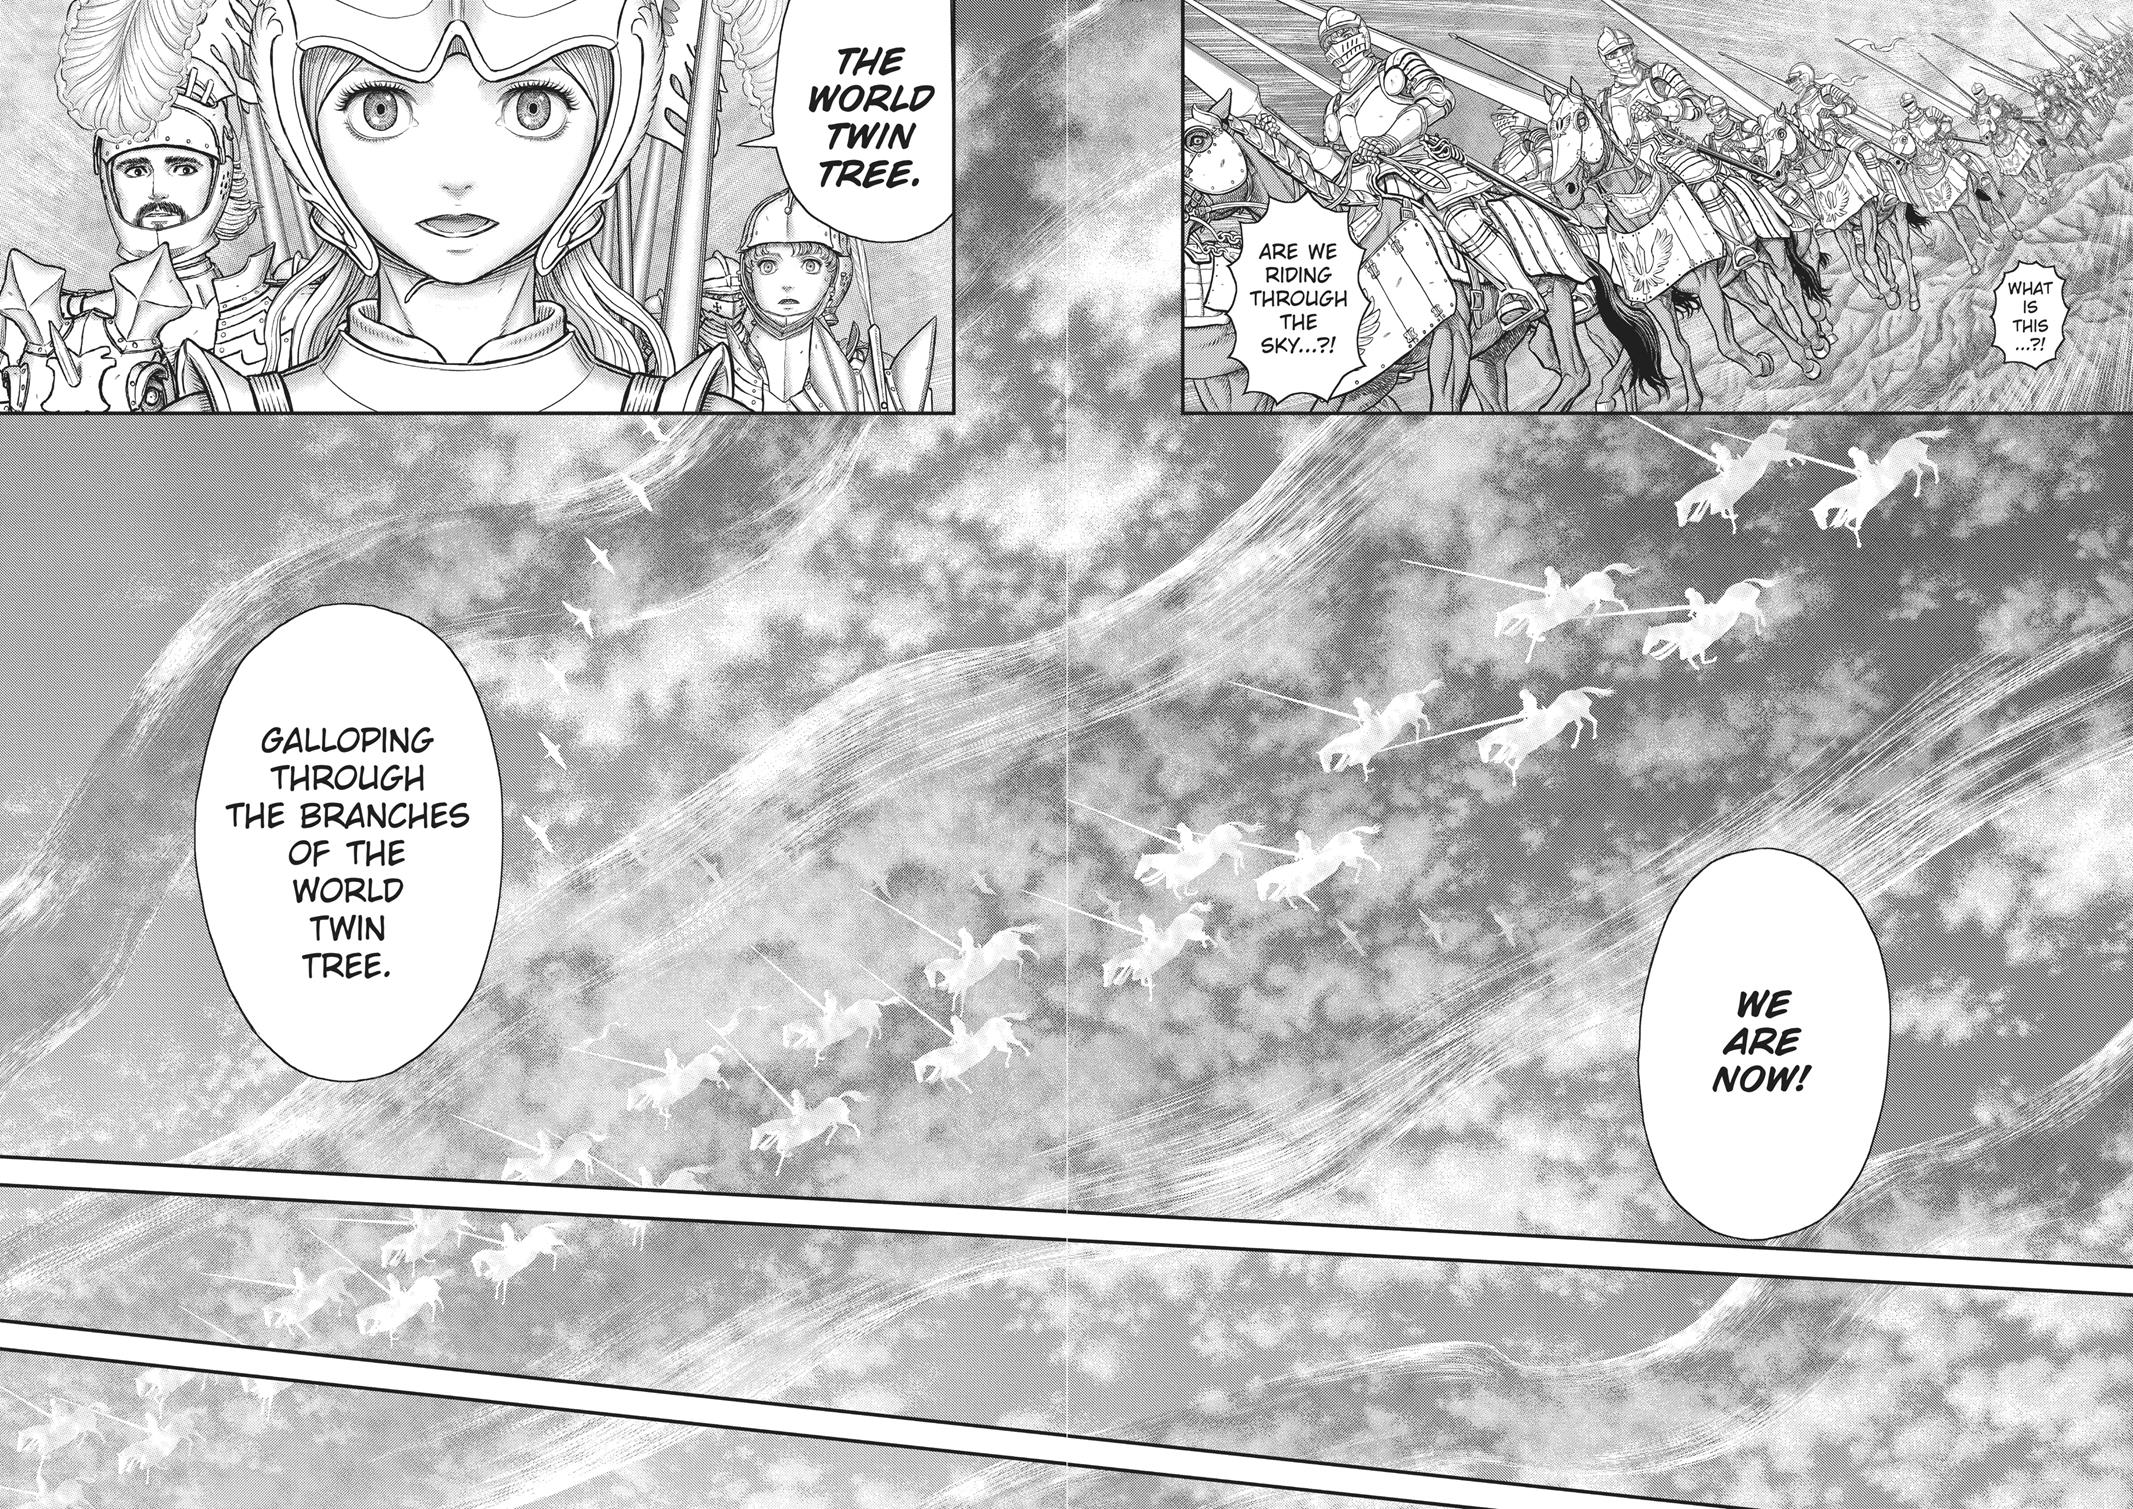 Berserk Manga Chapter 357 image 12